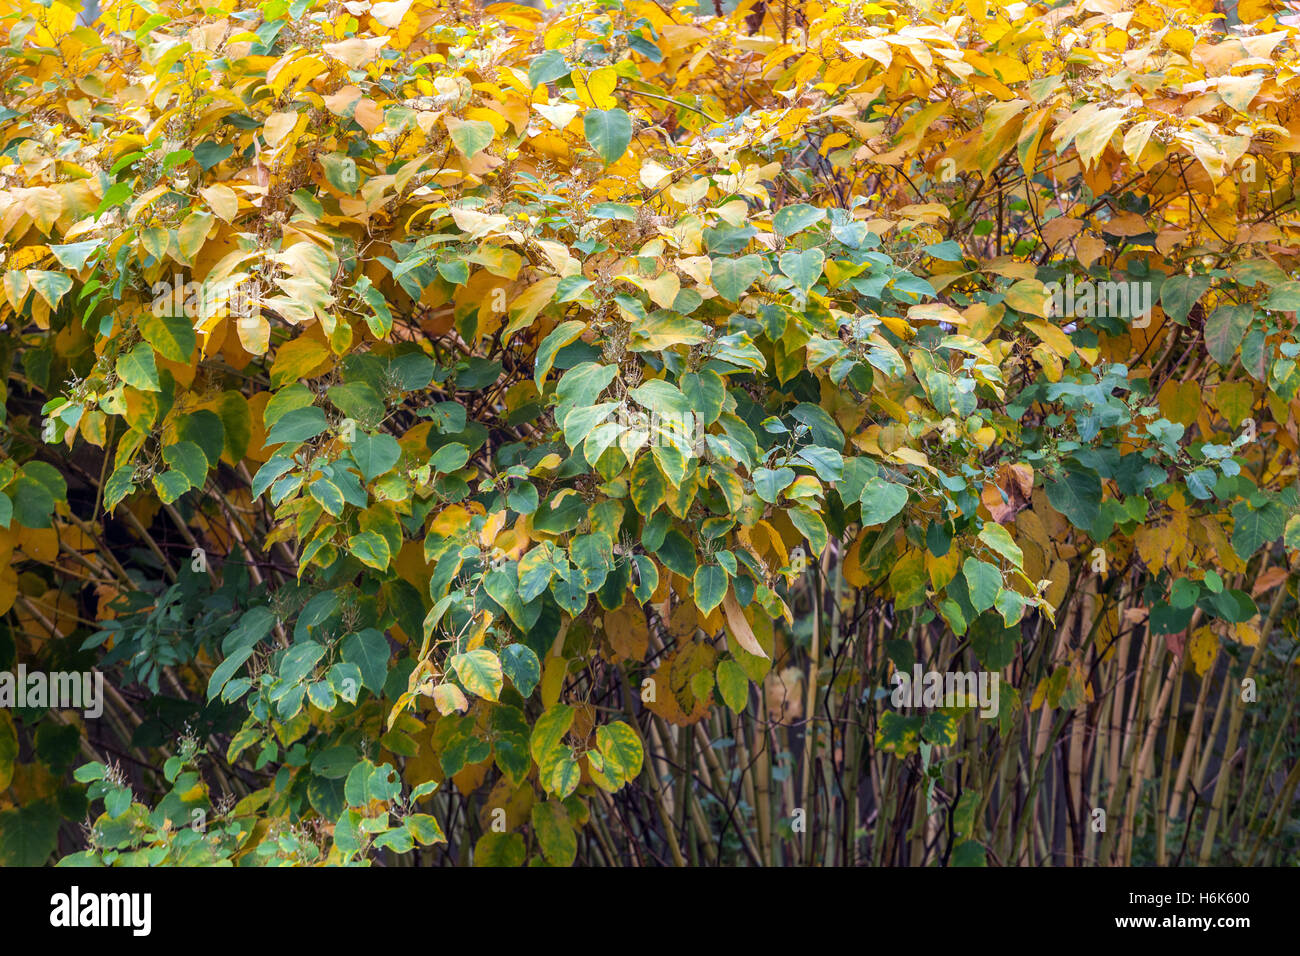 Japanischer Knotweed Fallopia japonica, Reynoutria japonica), Herbstfarben, invasiver Pflanzenstrauch Stockfoto